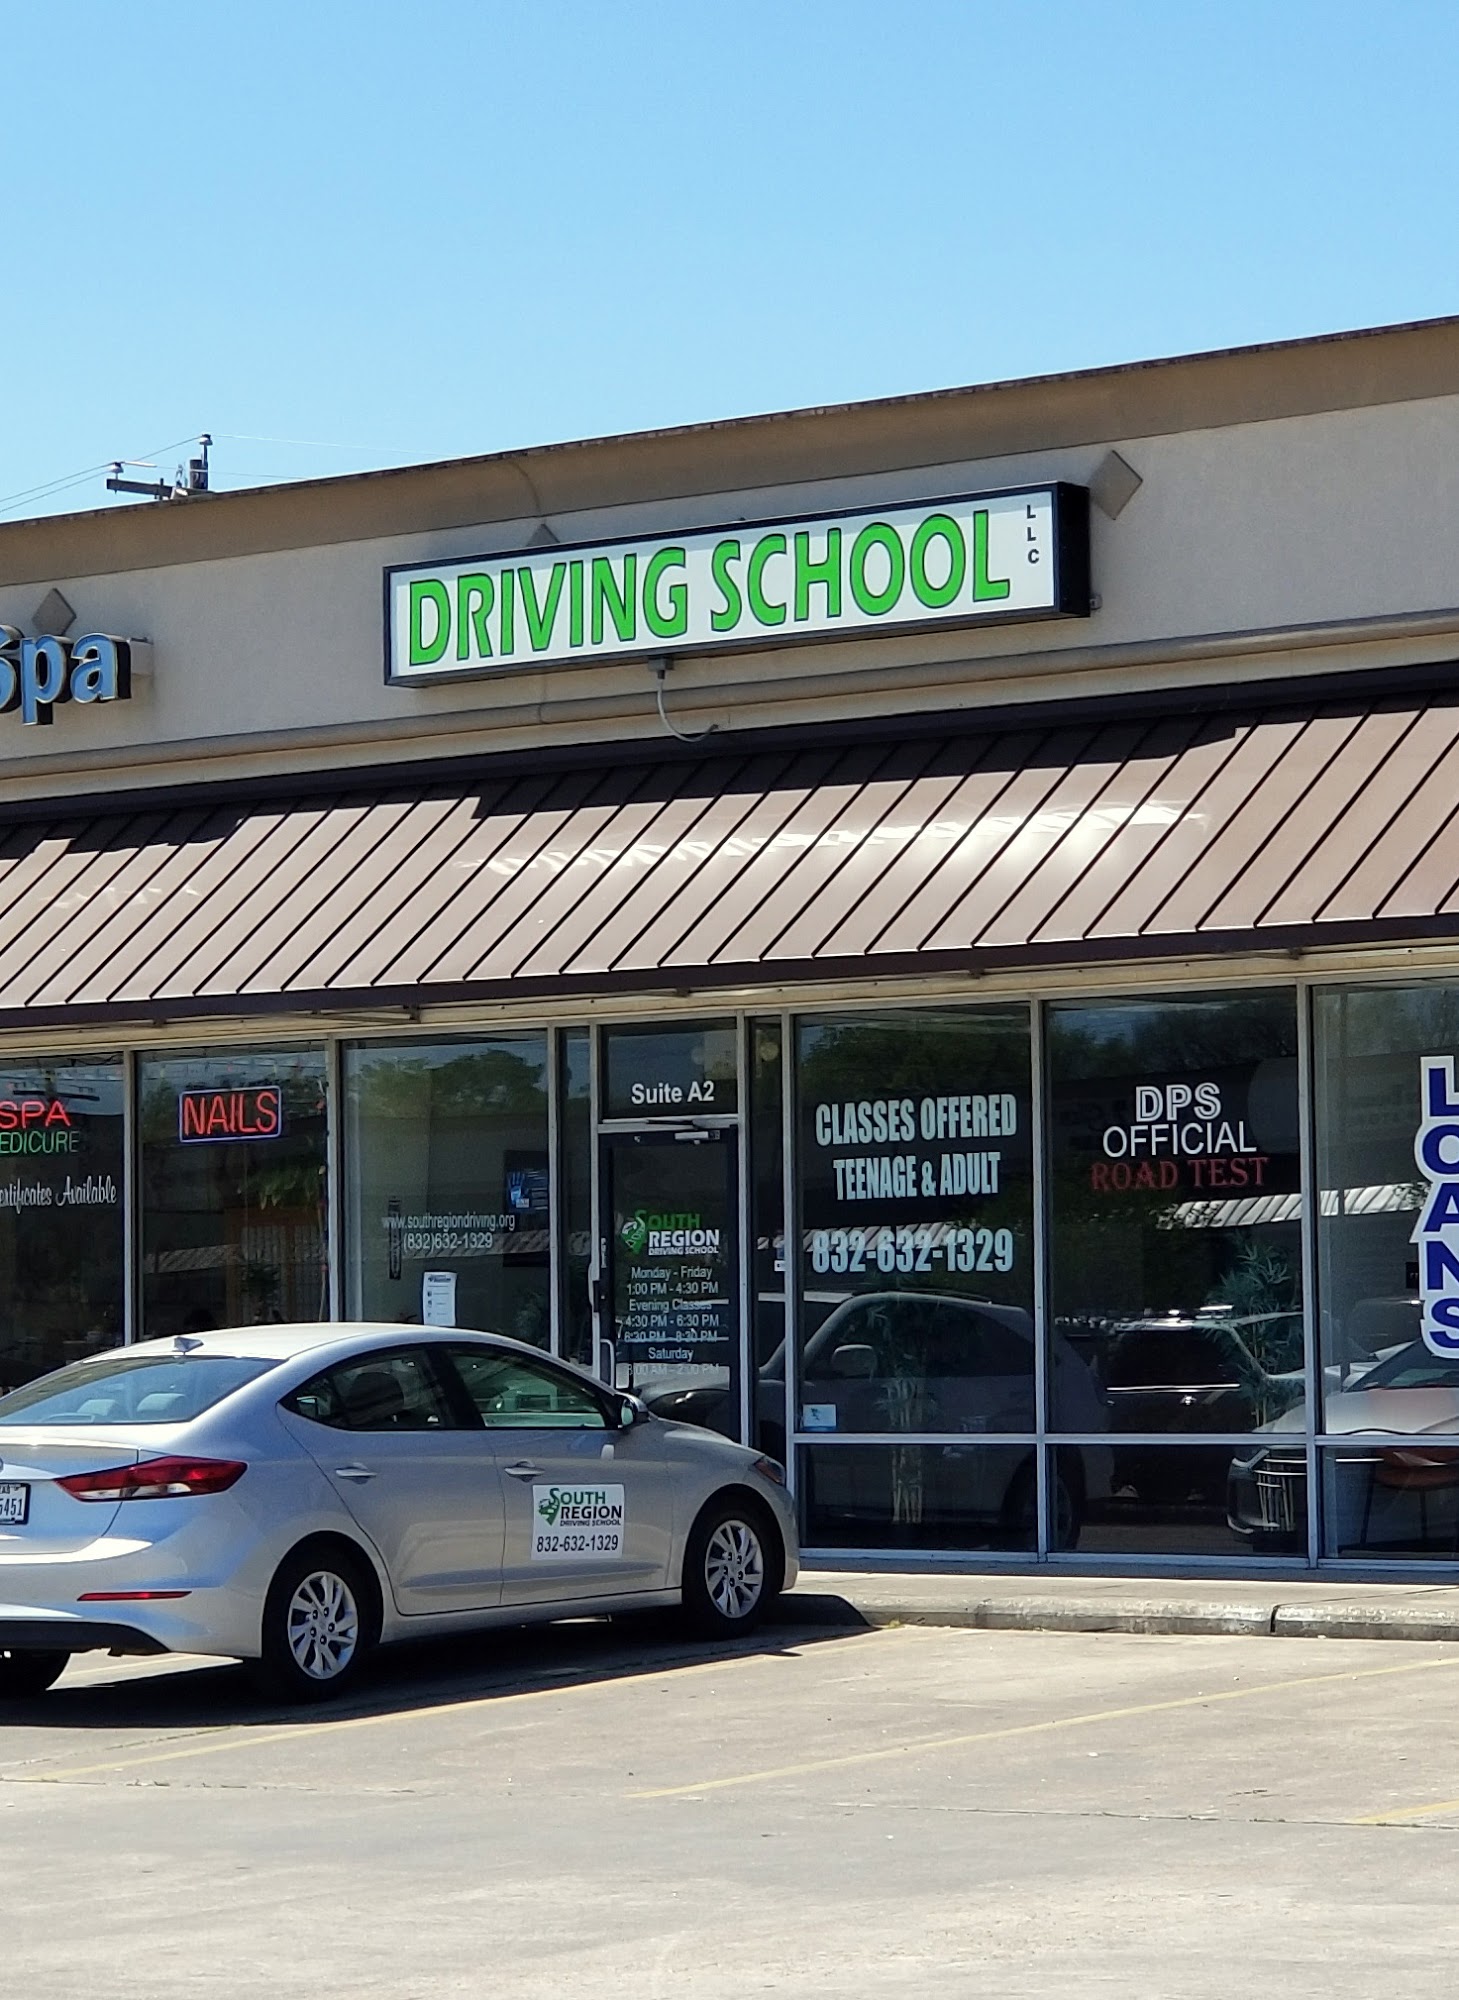 South Region Driving School LLC